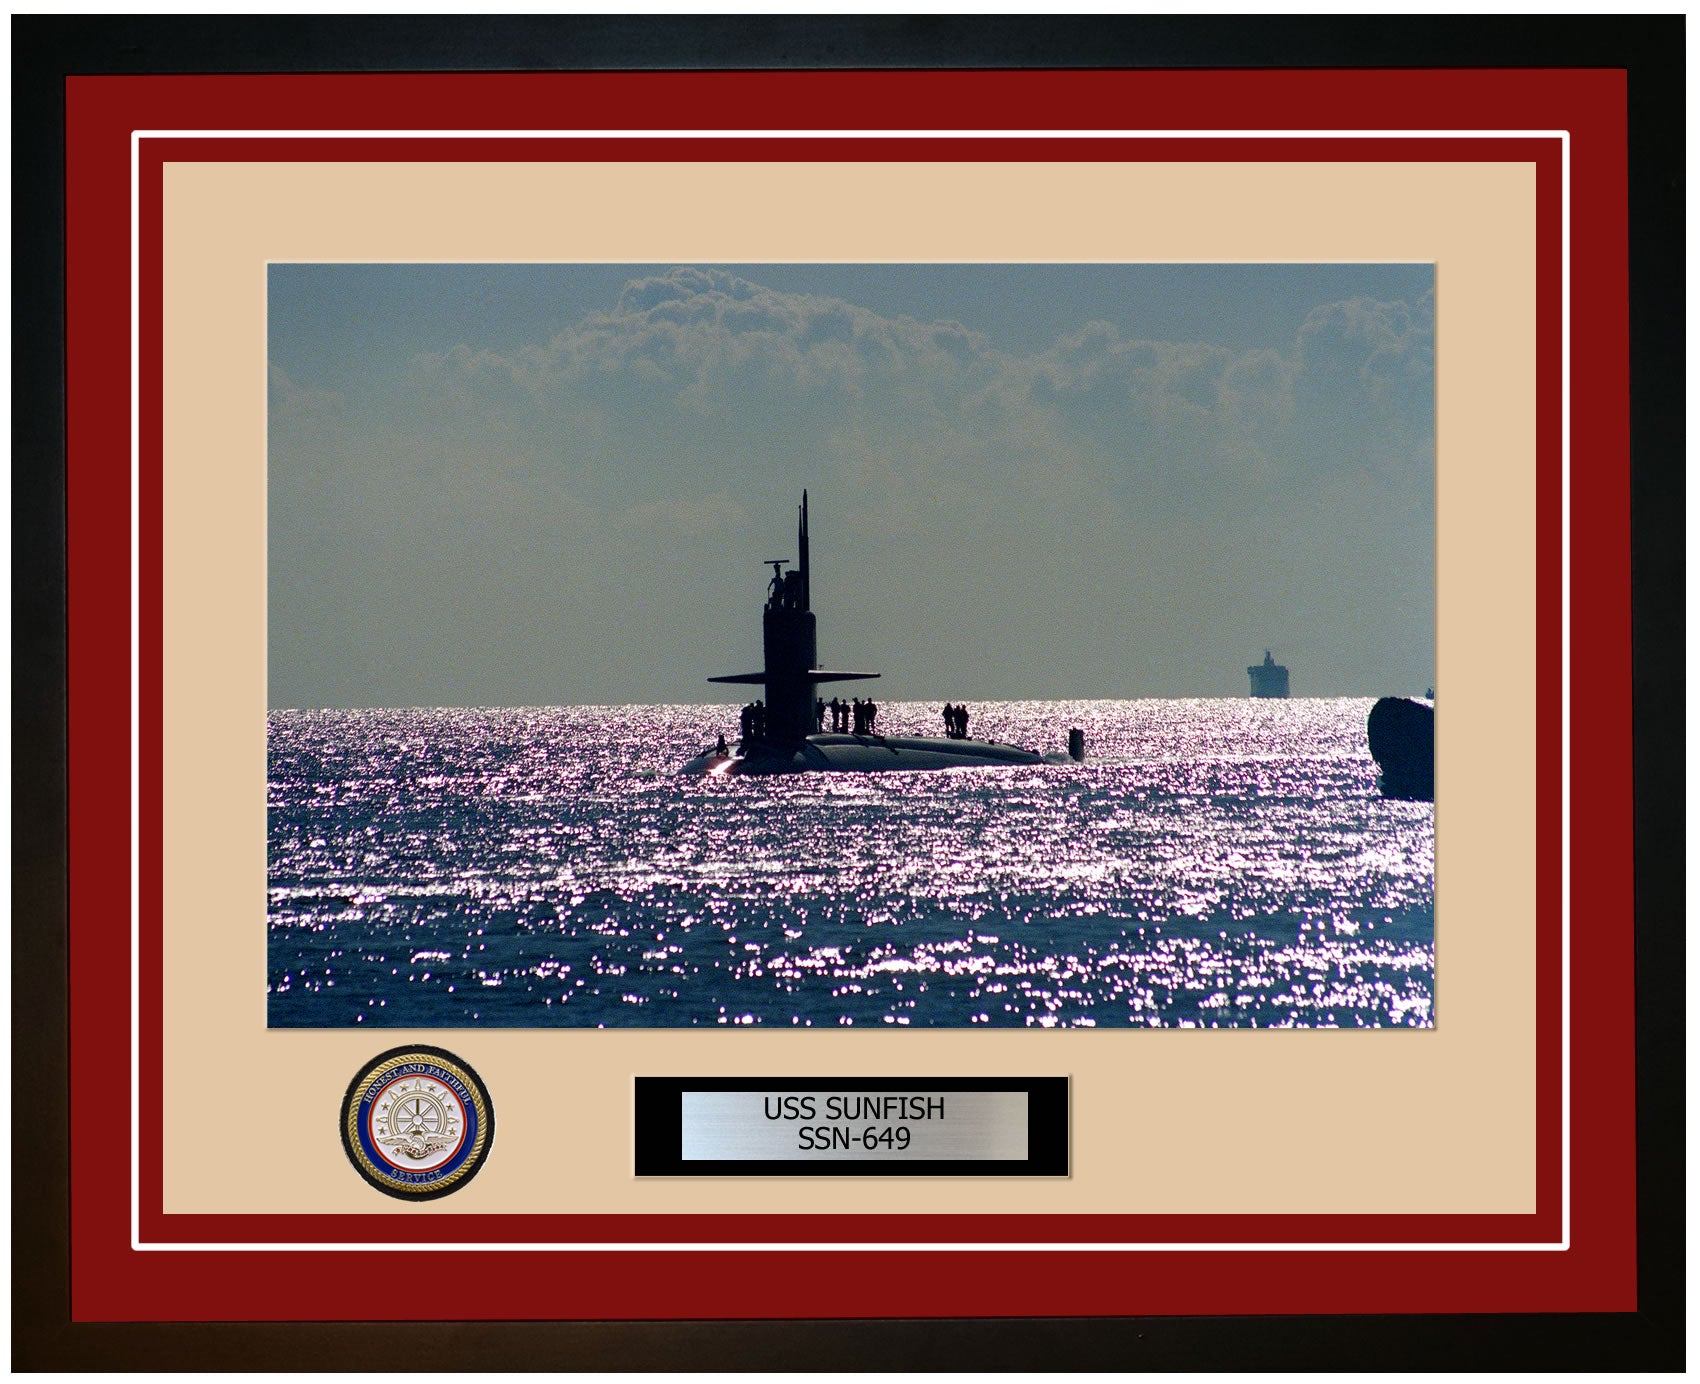 USS Sunfish SSN-649 Framed Navy Ship Photo Burgundy